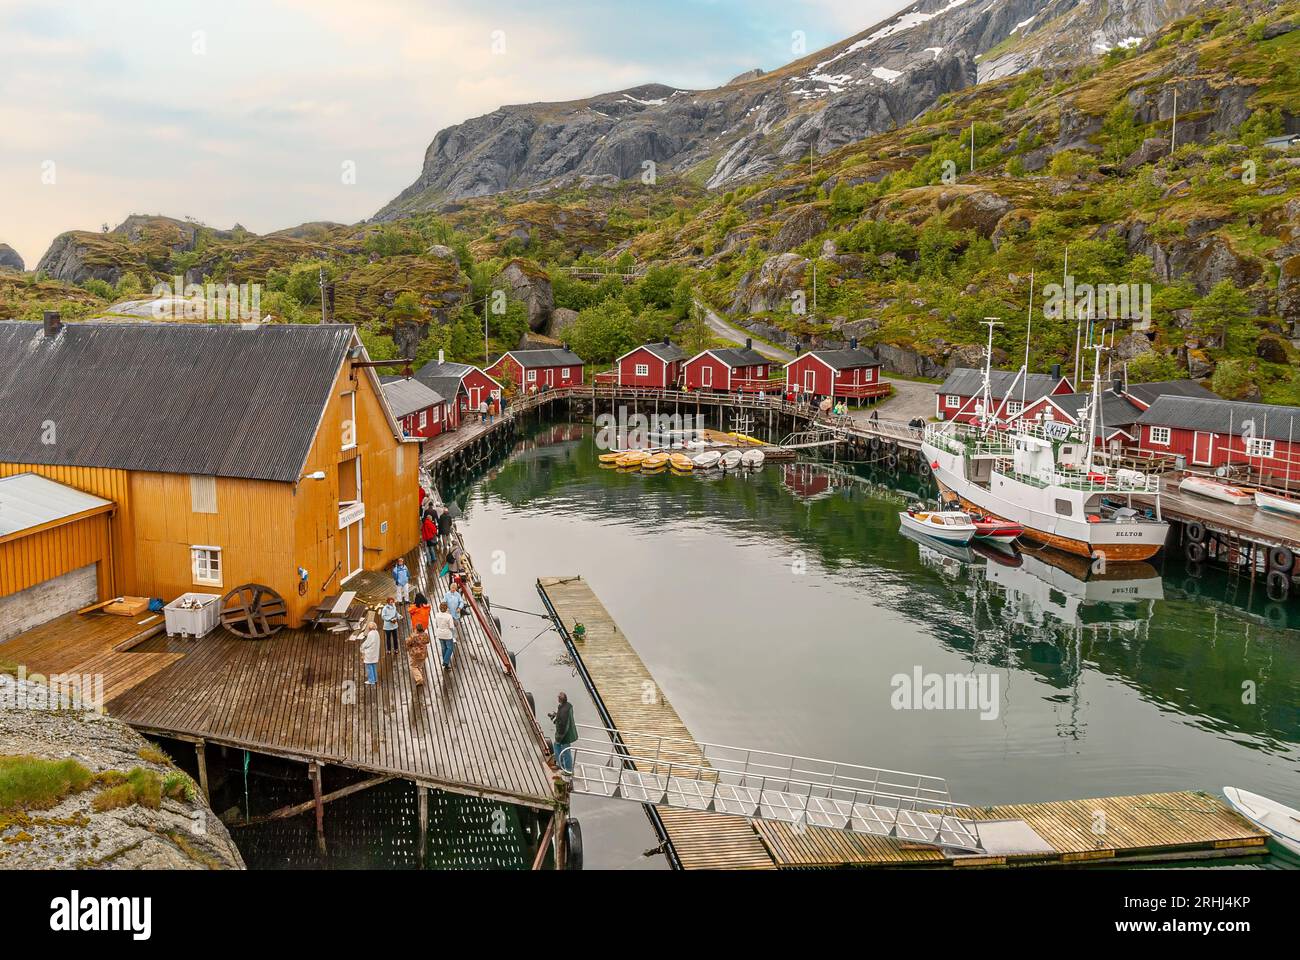 Touristen im Village Nusfjorden, Island Flagstadoy, Lofoten, Norwegen Stockfoto